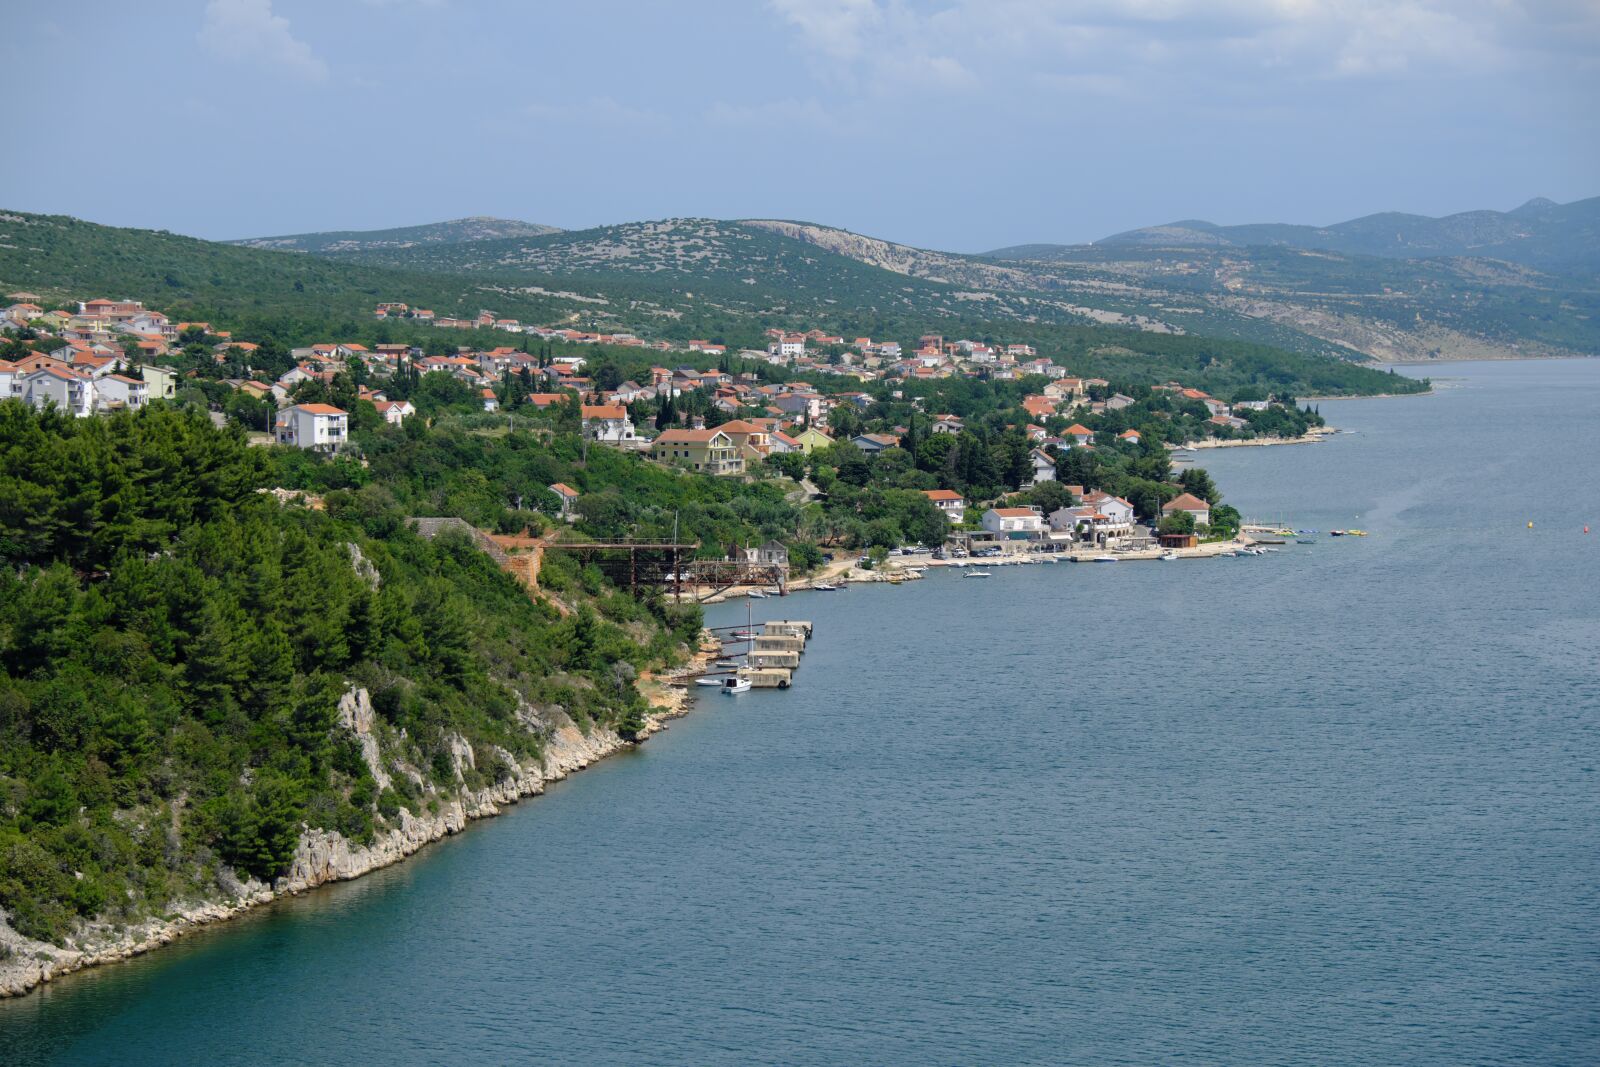 Fujifilm X-T2 sample photo. Adriatic sea, croatia, dalmatia photography